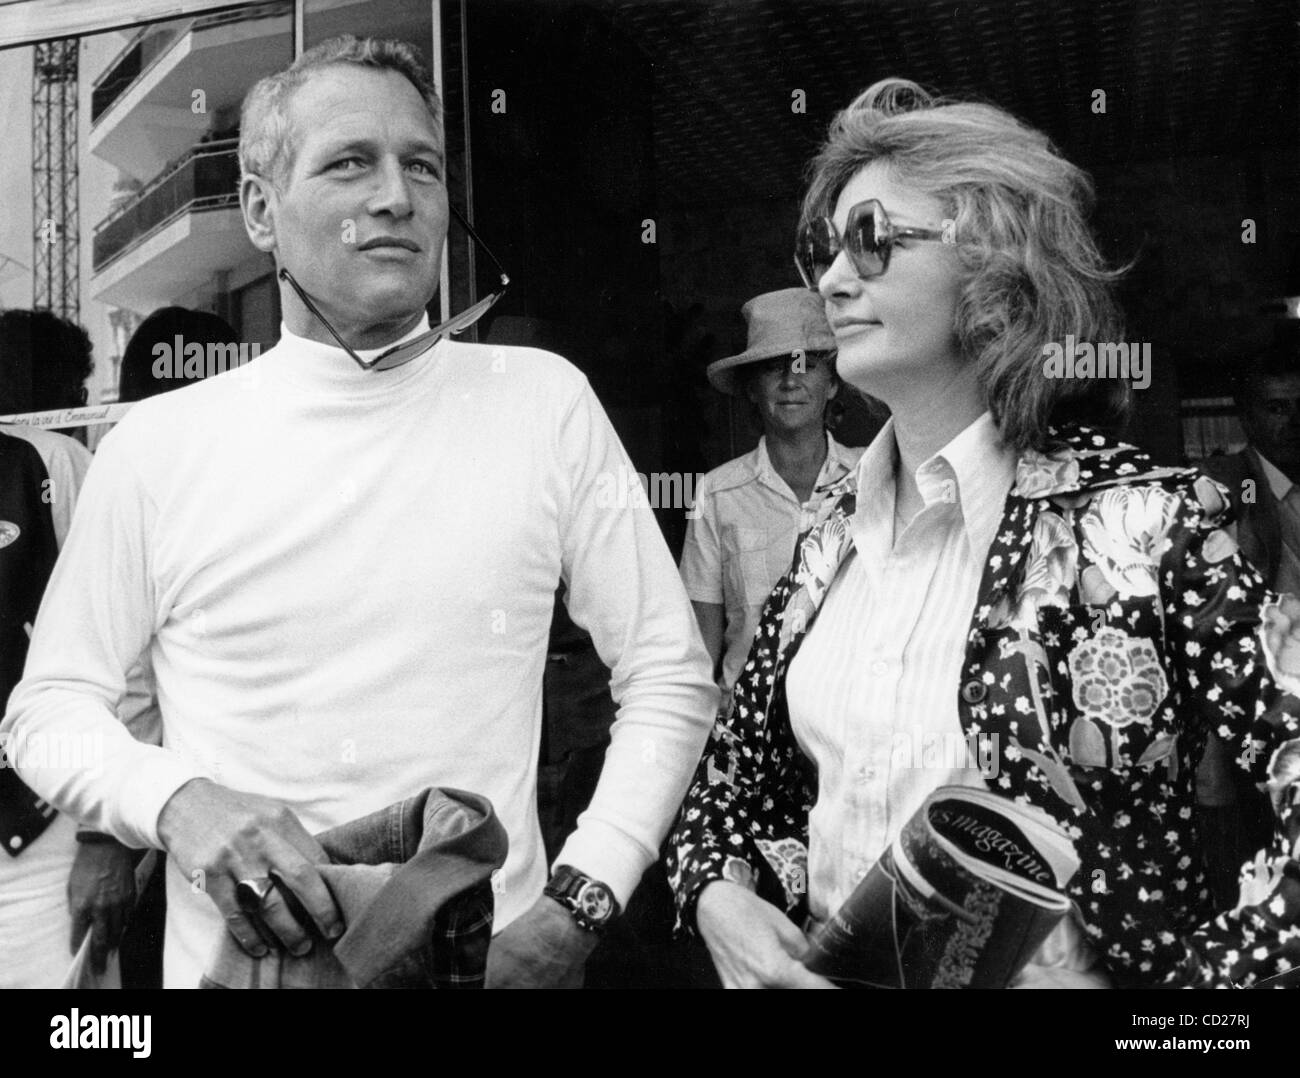 7 luglio 1973 - Cannes, Francia - Paul Newman è più come un eroe fuori schermo come a. Blue-eyed matinee idol la cui carriera ha attraversato con successo cinque decenni, egli è anche un eminente attivista sociale, un grande sostenitore di attori' diritti creativi e un noto filantropo. Nella foto: Newman con mia moglie, ac Foto Stock